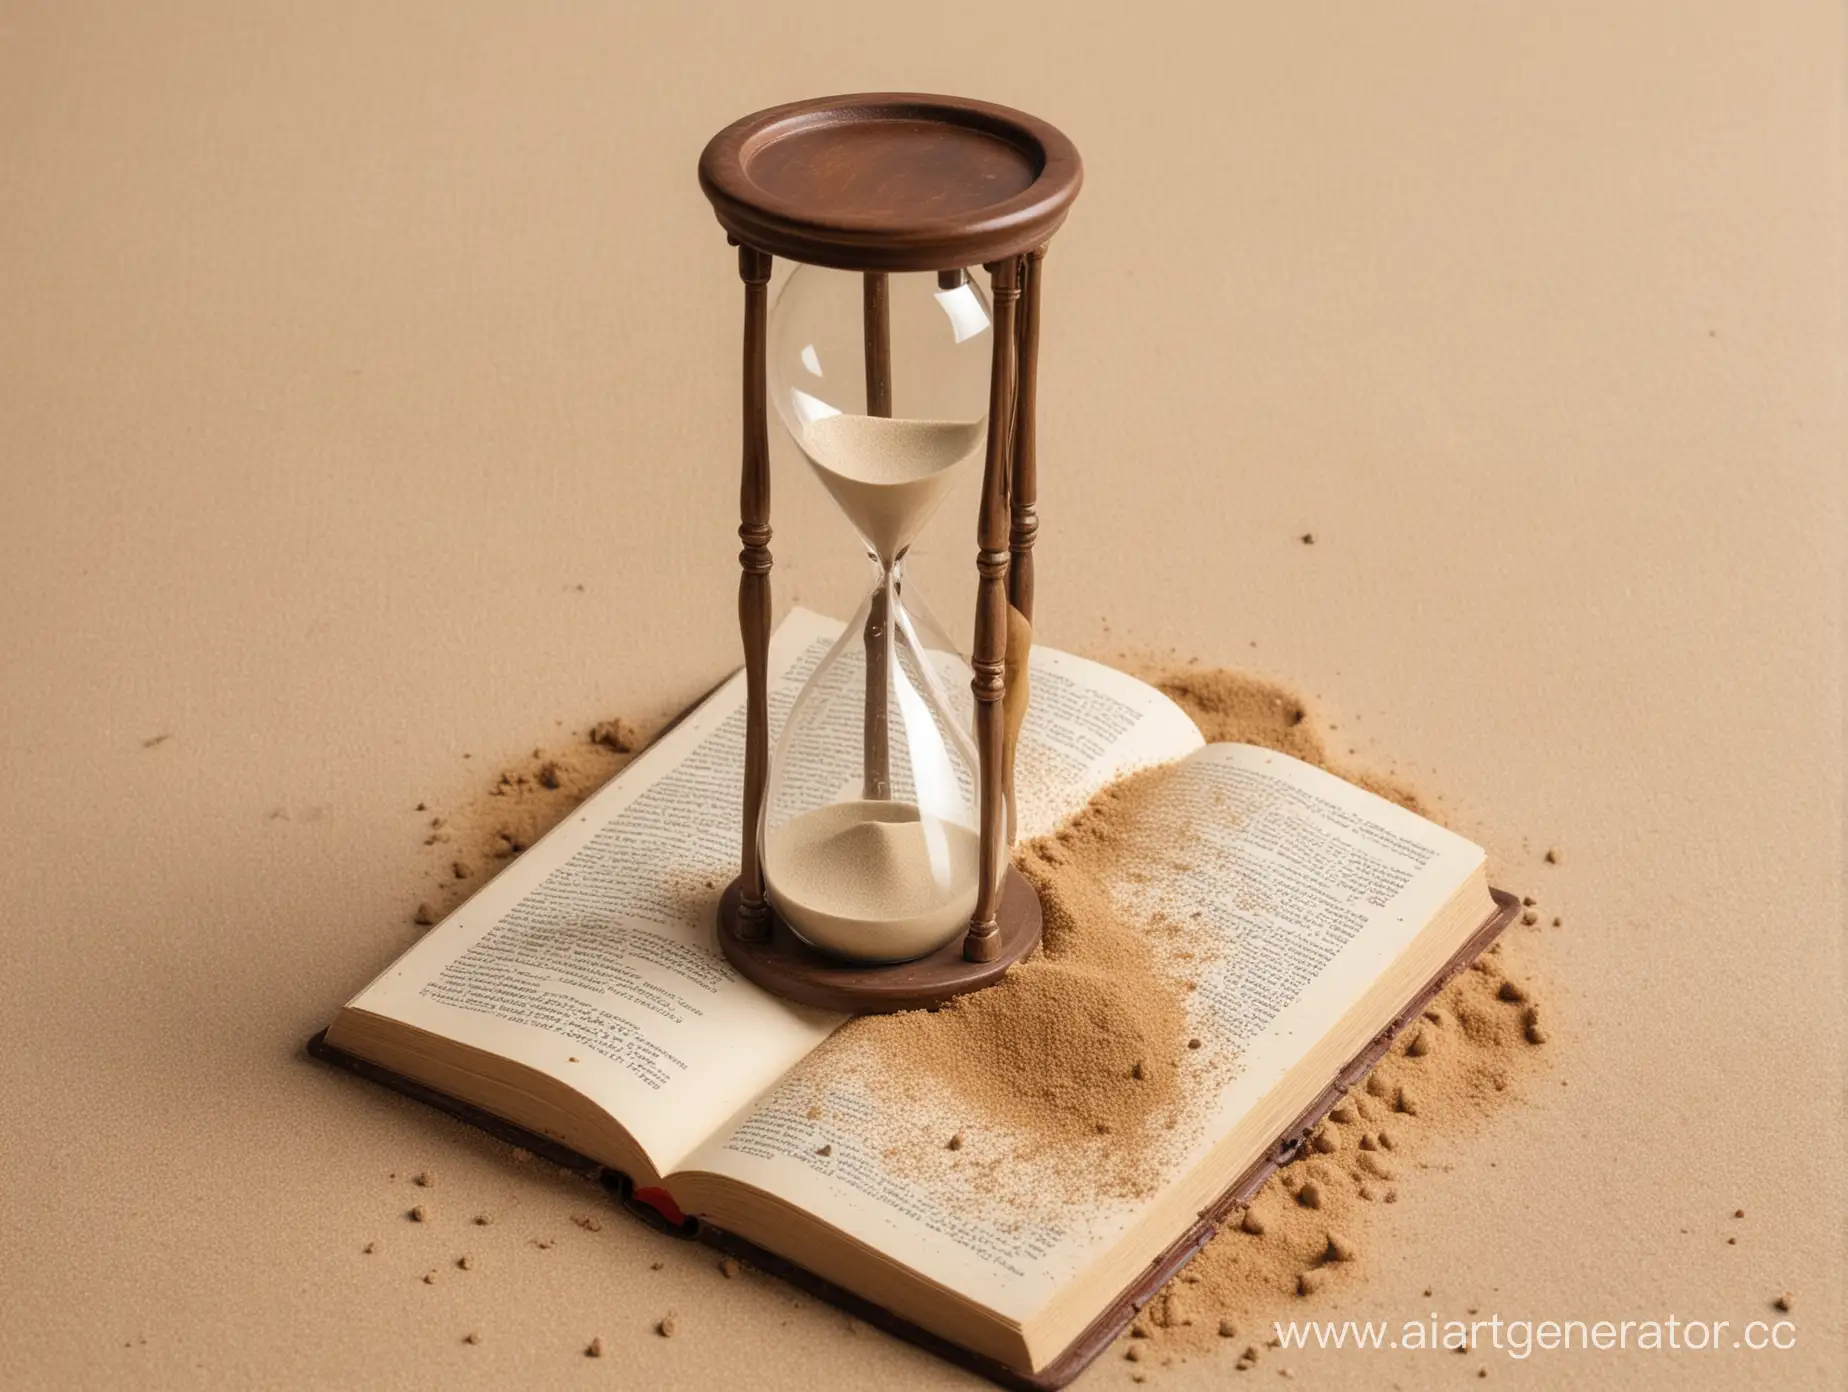 An hourglass with a broken bottom spills sand onto a book